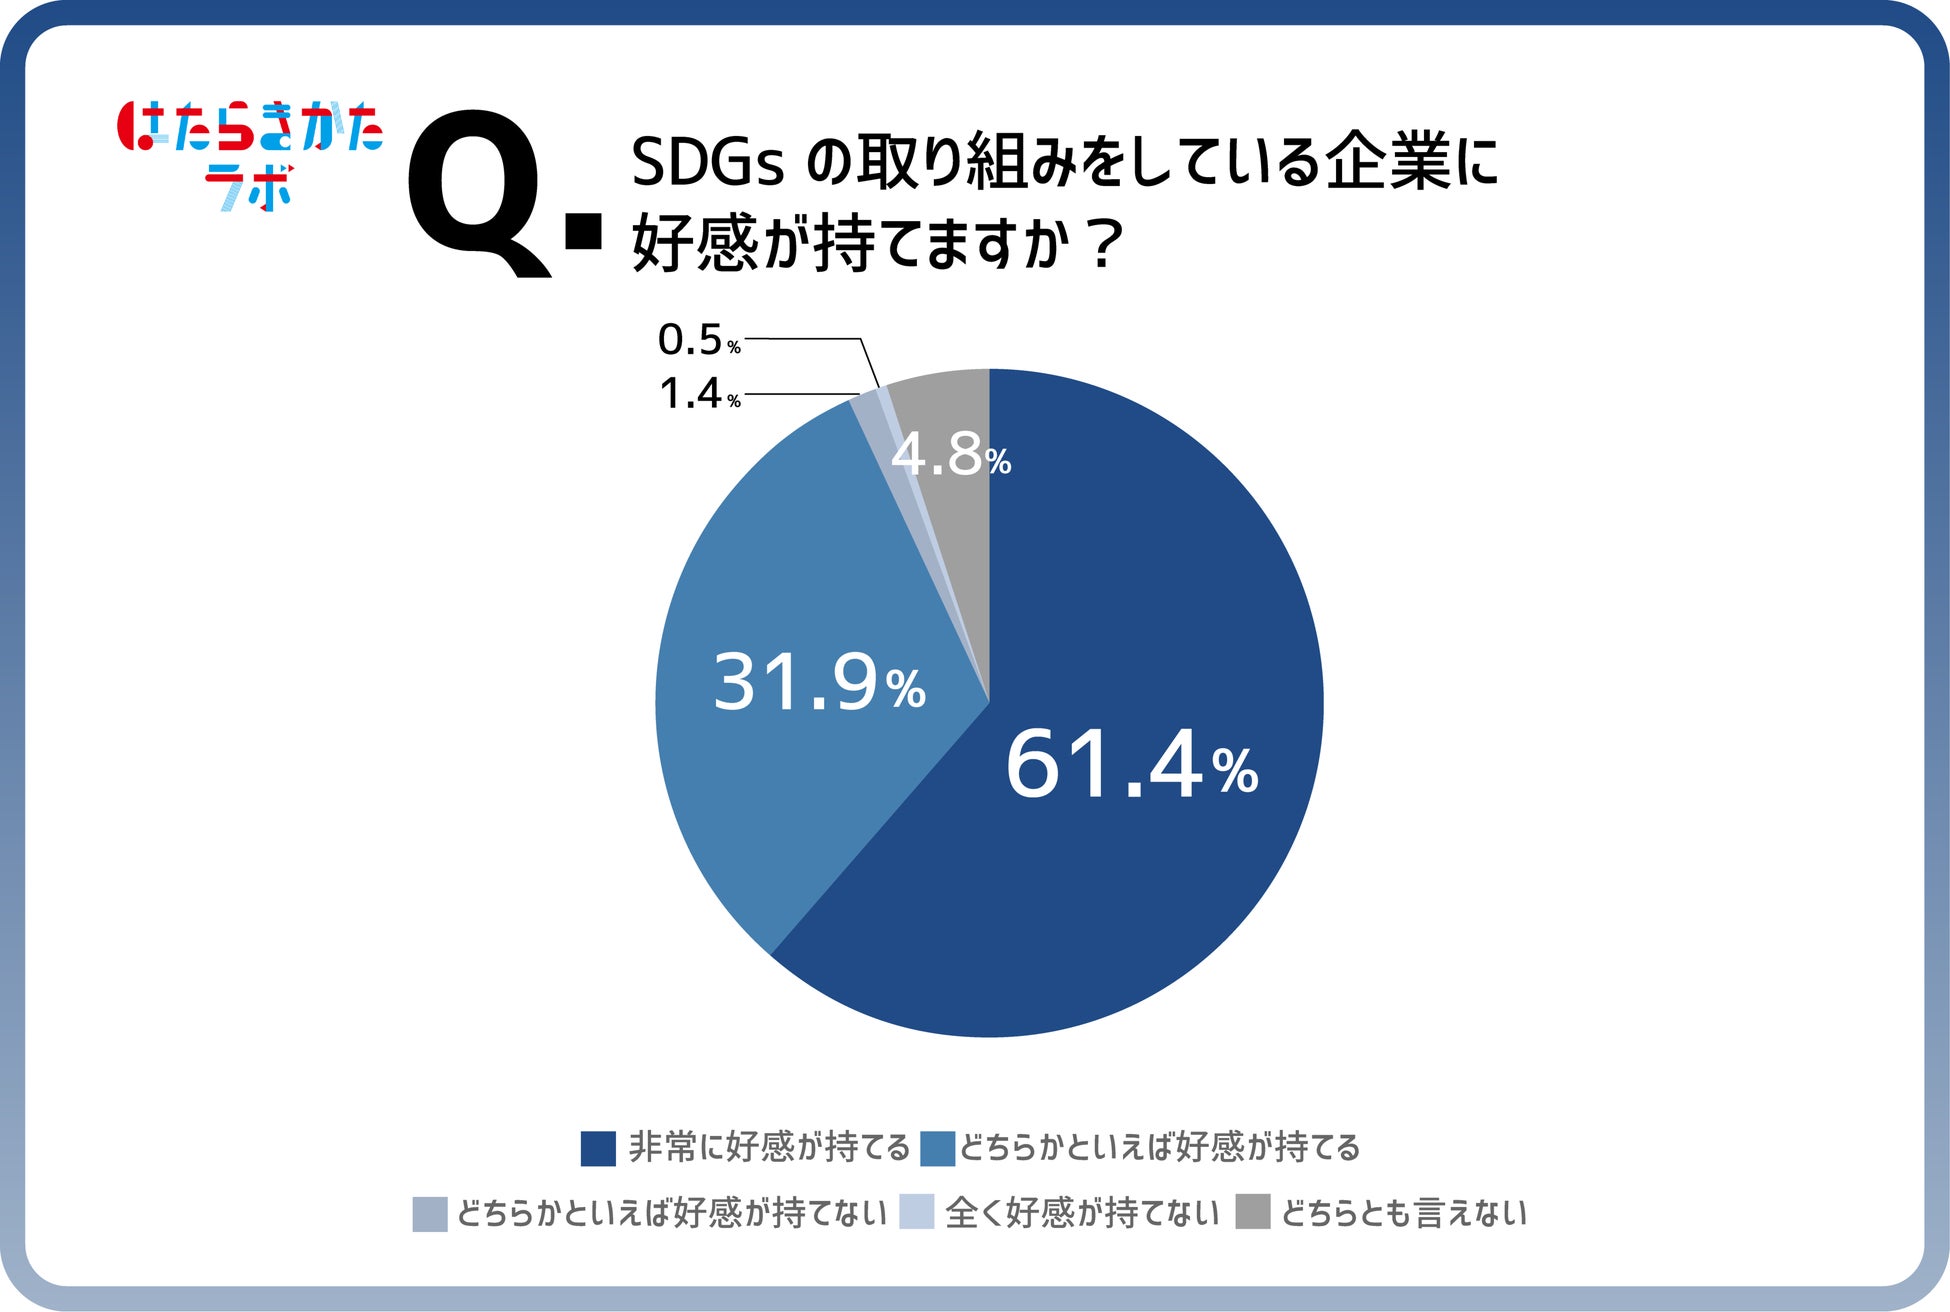 【はたらきかたラボ調査】第7回目のテーマは、SDGs。8割以上がSDGsに「興味がある」と回答。一方で「Z世代だからSDGsに興味あり」には違和感も。Z世代のSDGsに対する本音はいかに？のサブ画像5